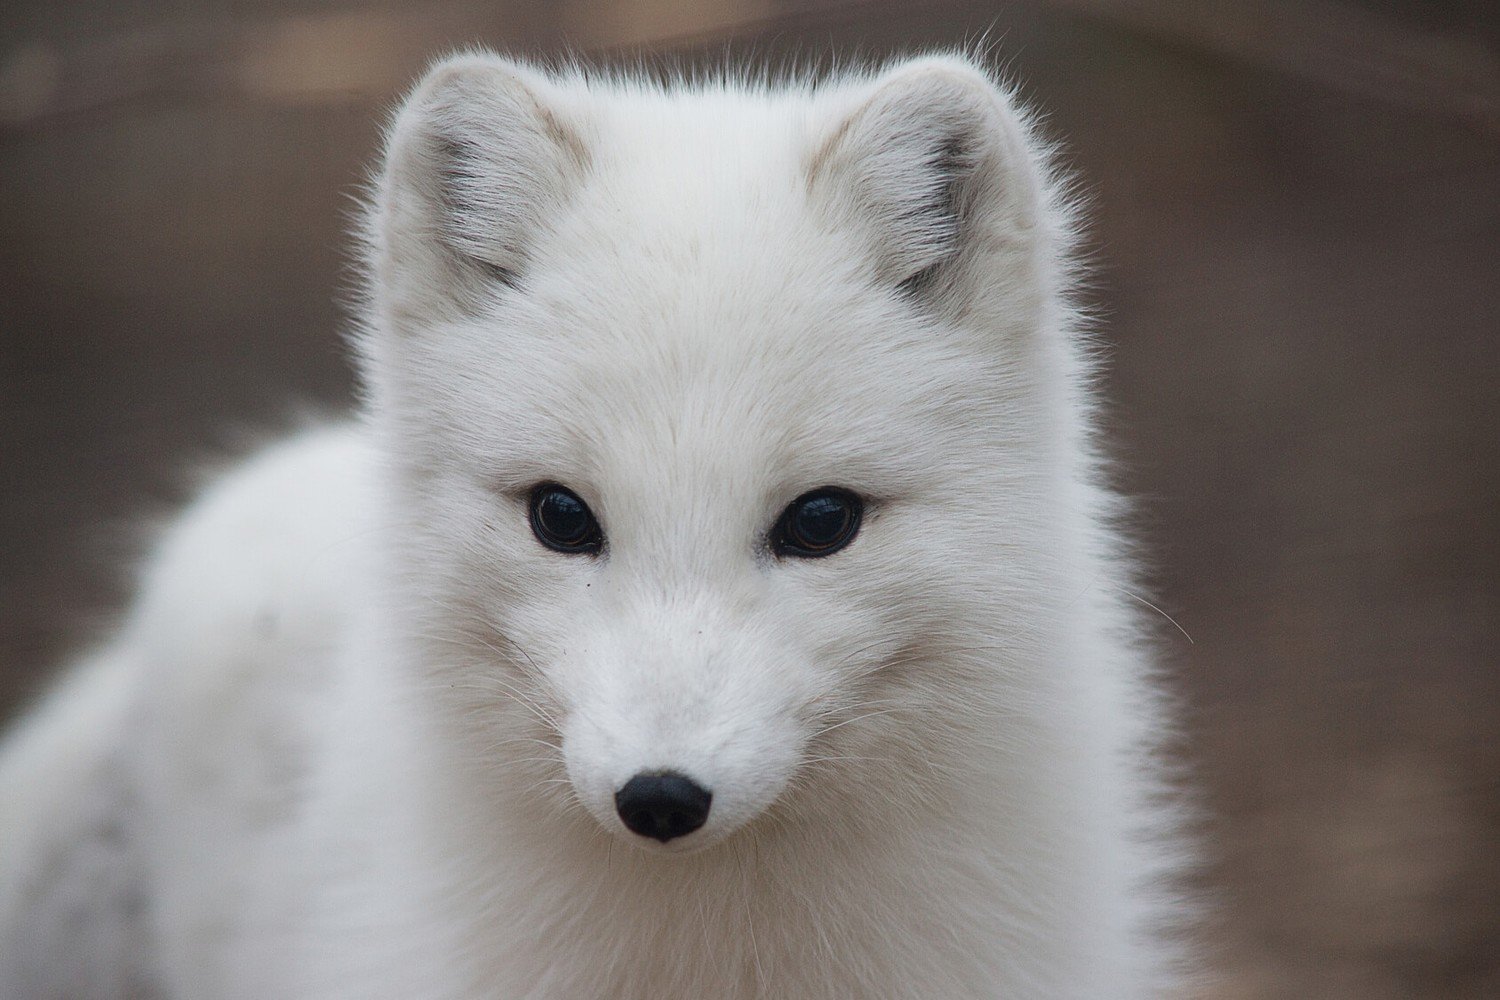 Adopt An Arctic Fox